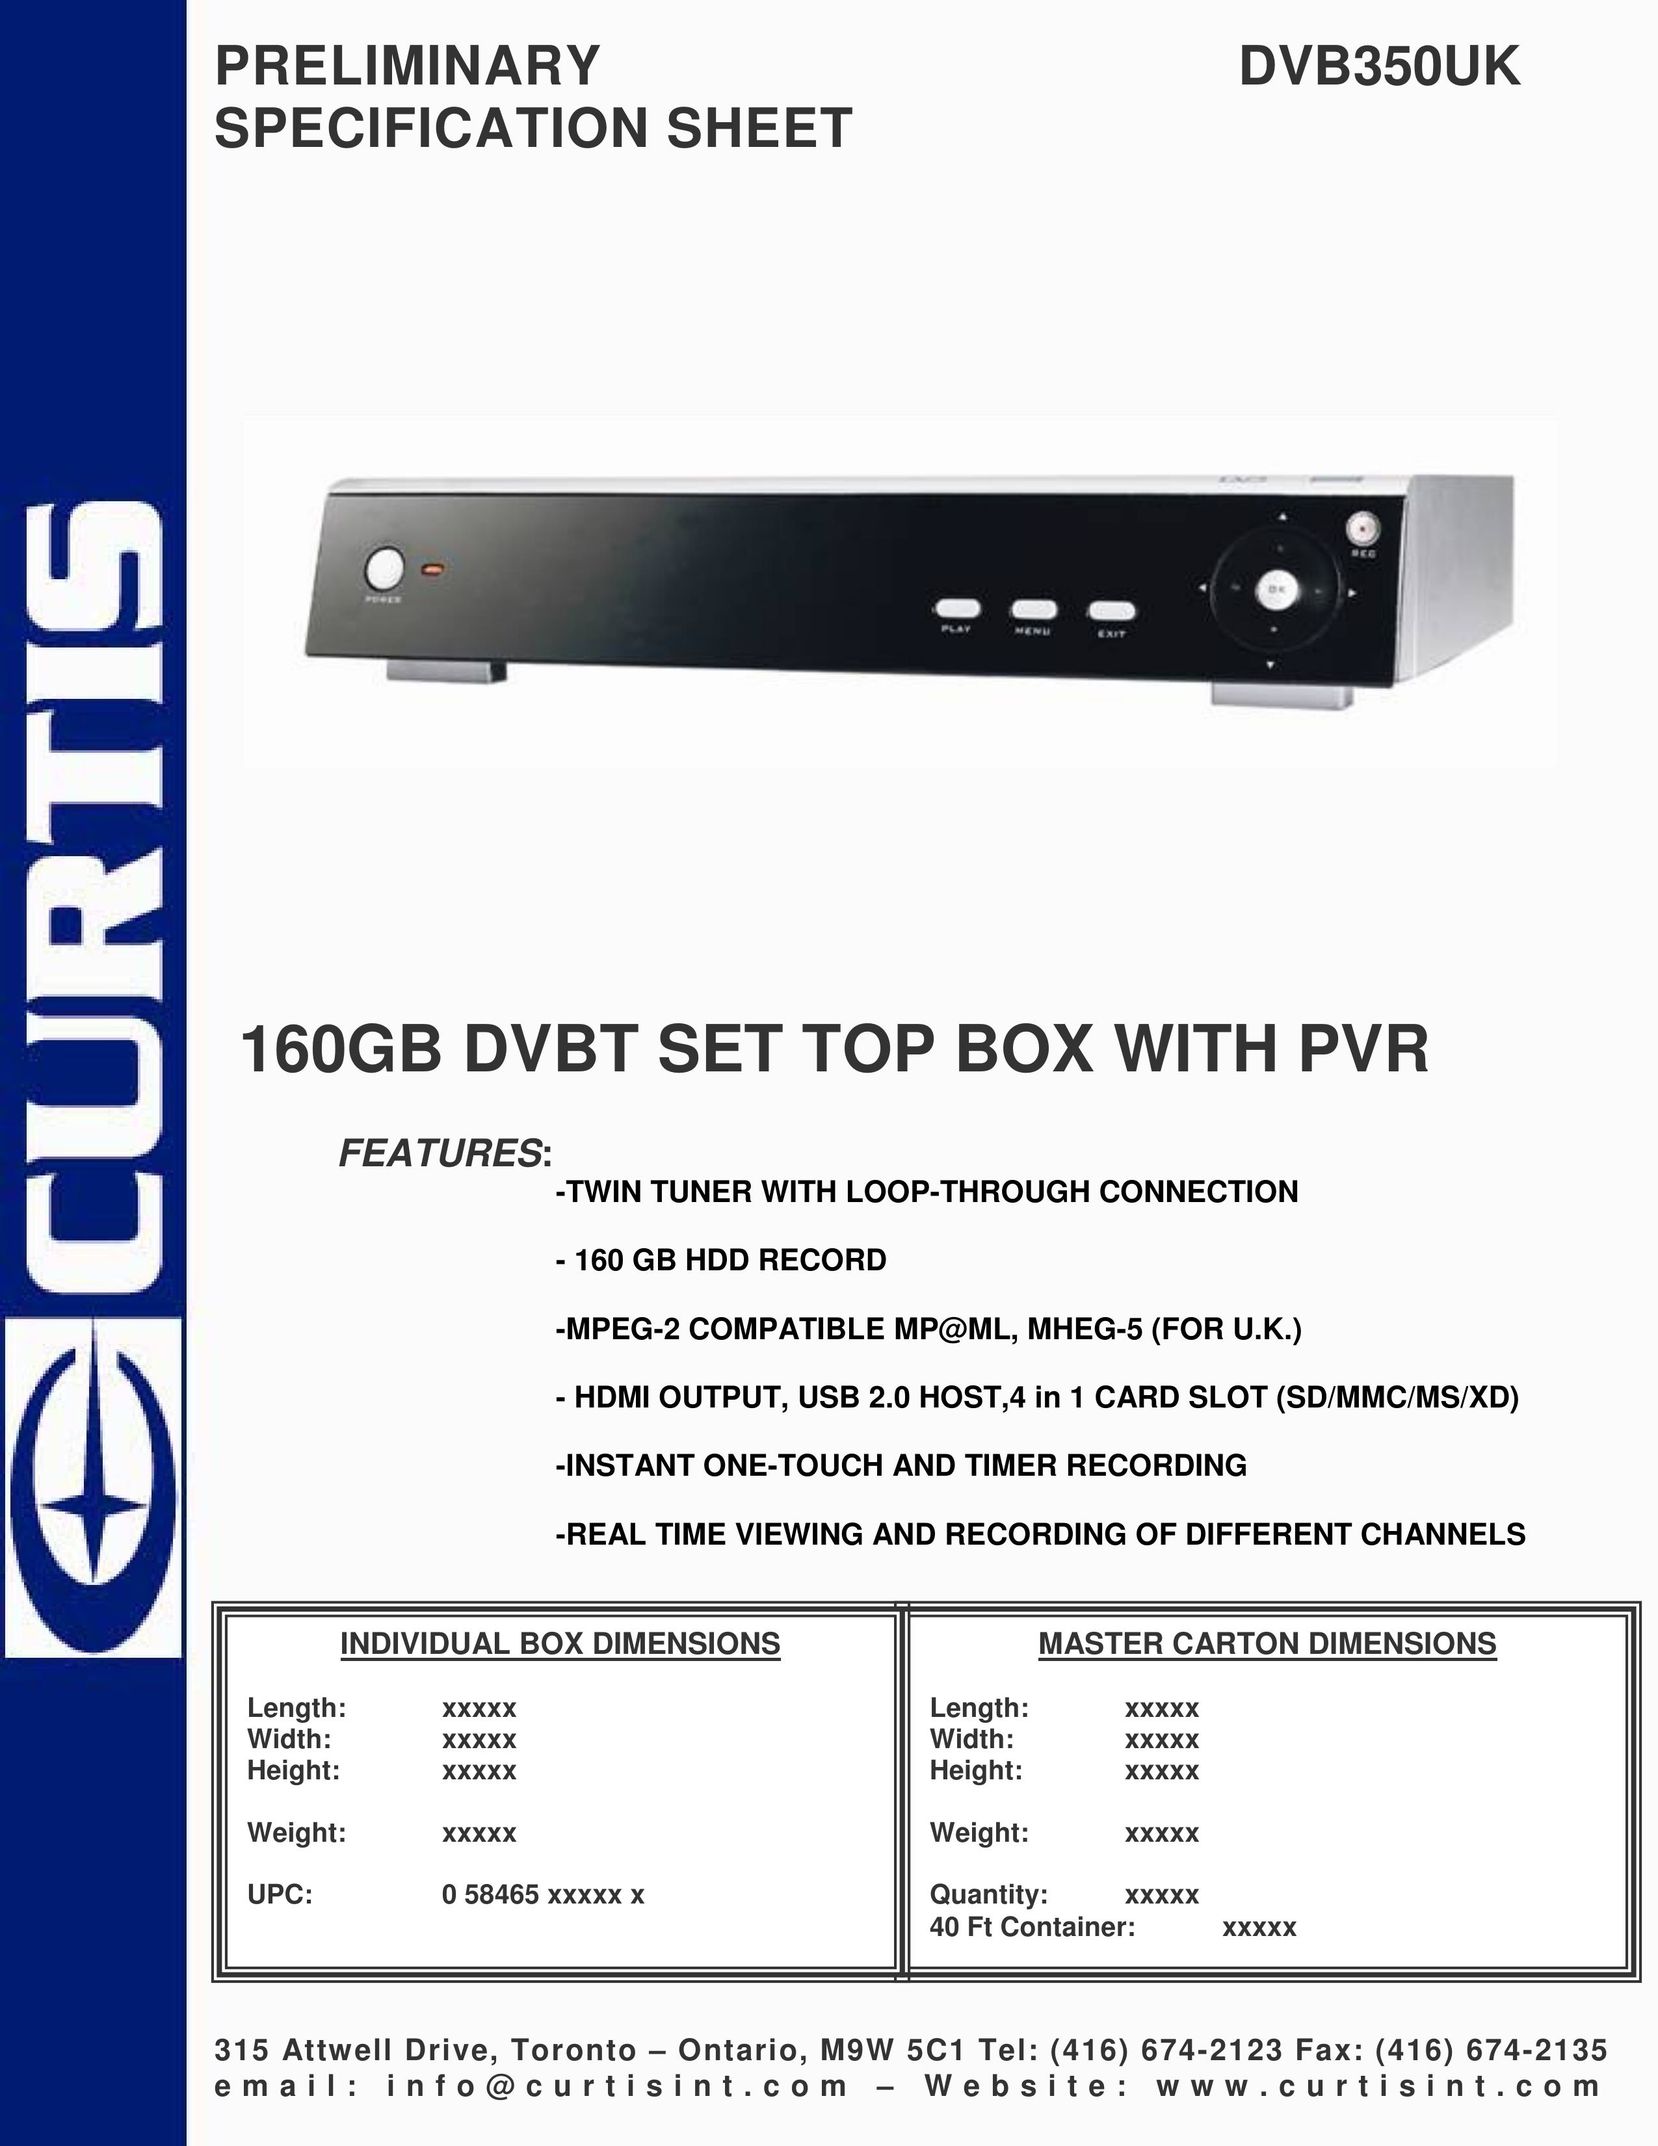 Curtis DVB350UK Satellite TV System User Manual